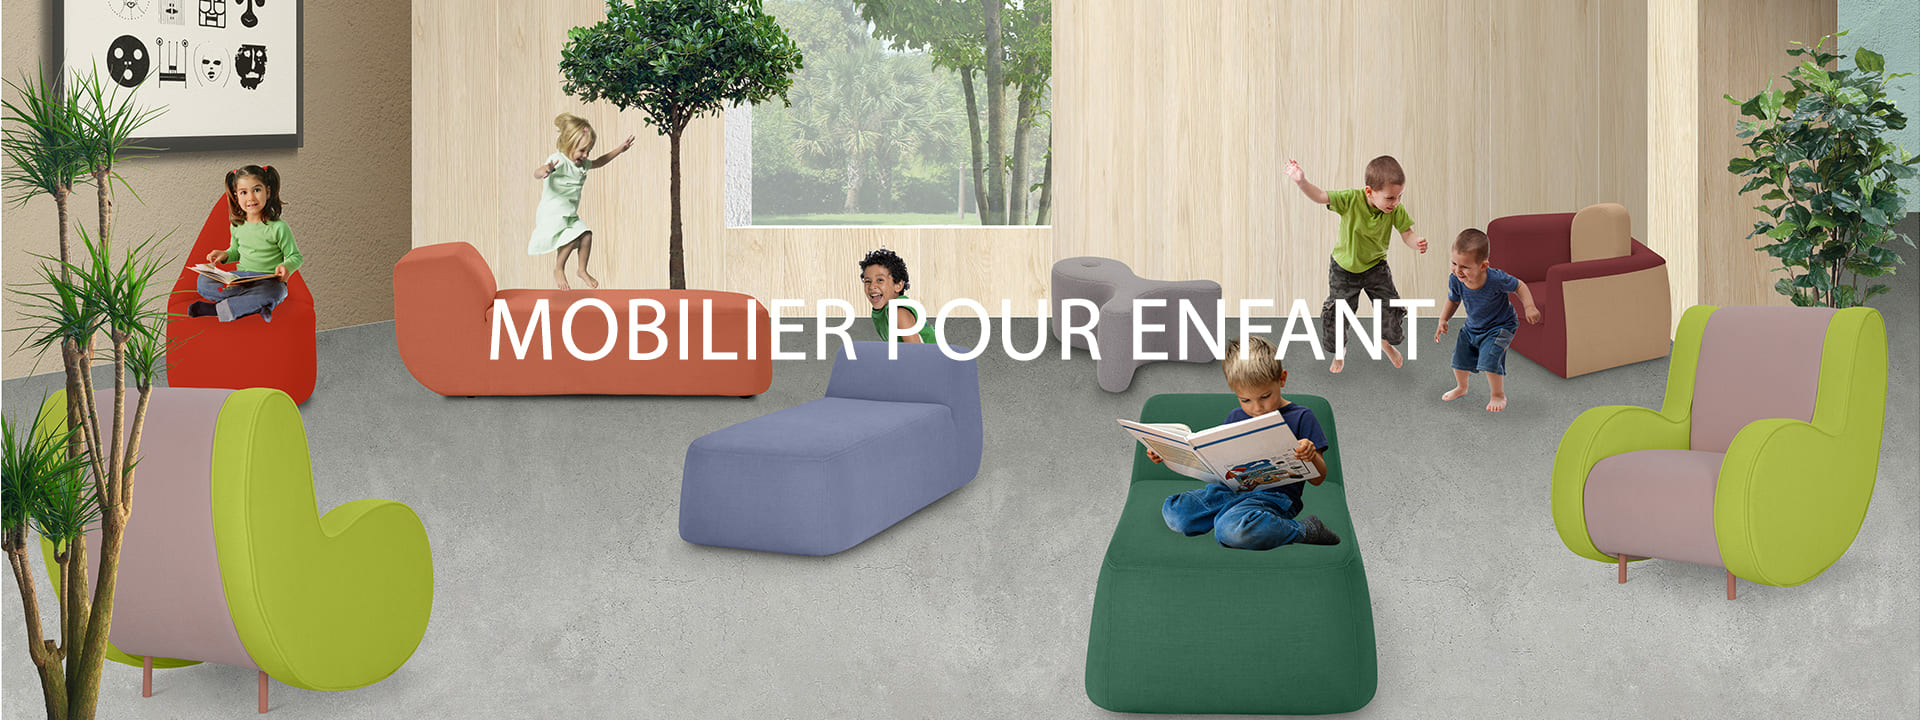 mobilier pour enfant design colore confort (1)